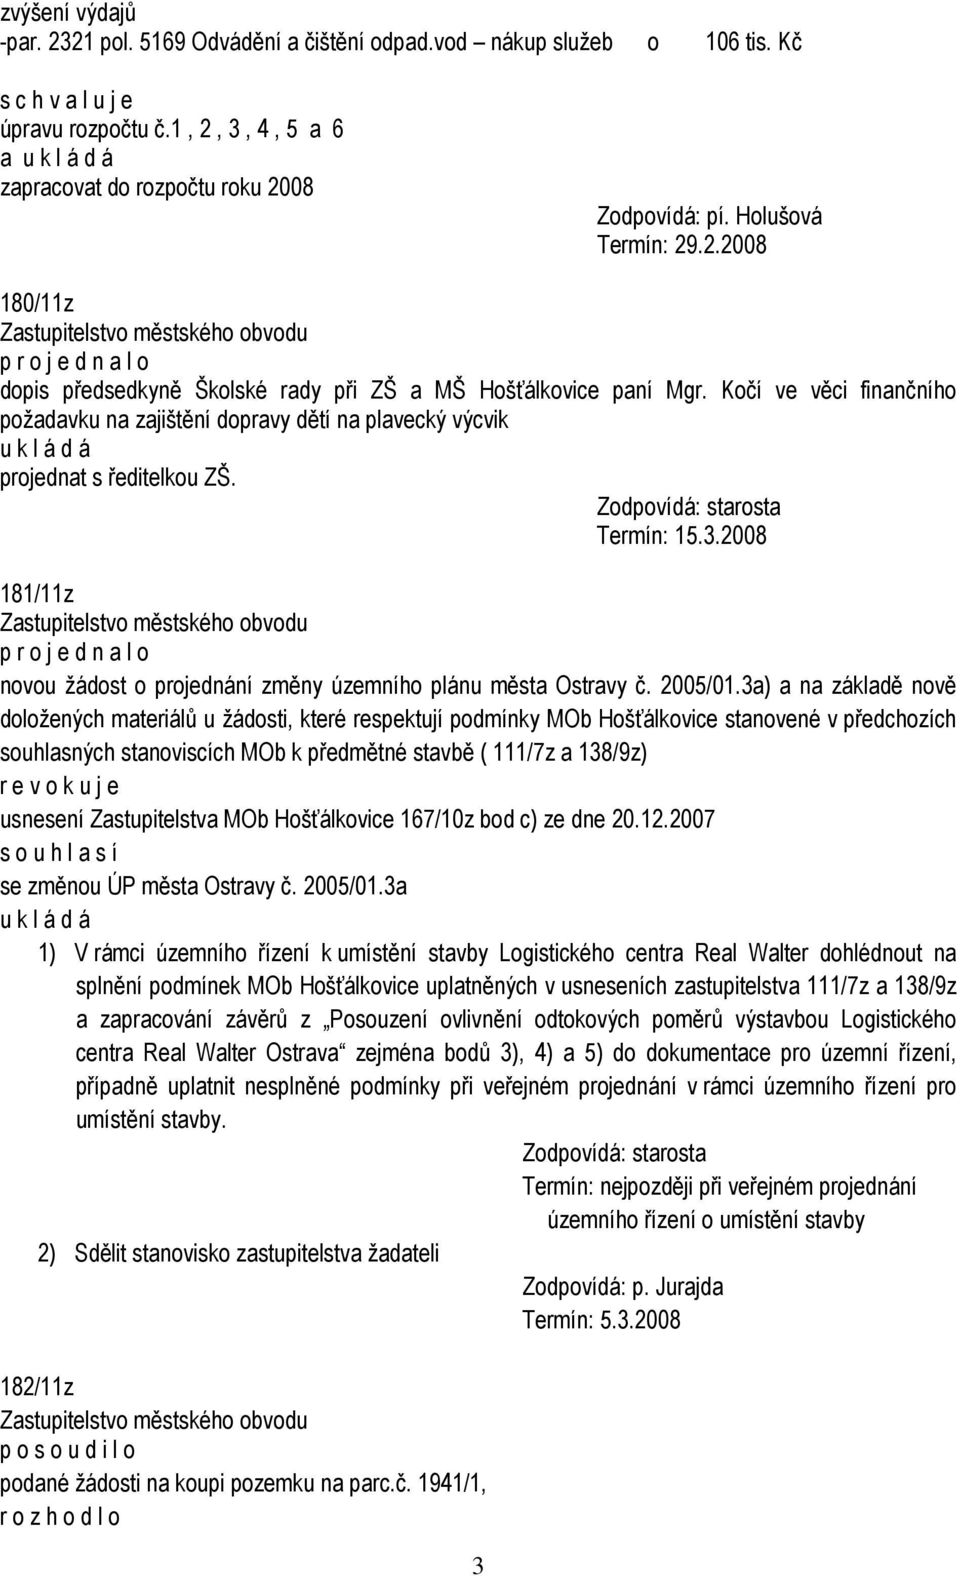 3a) a na základě nově doložených materiálů u žádosti, které respektují podmínky MOb Hošťálkovice stanovené v předchozích souhlasných stanoviscích MOb k předmětné stavbě ( 111/7z a 138/9z) r e v o k u